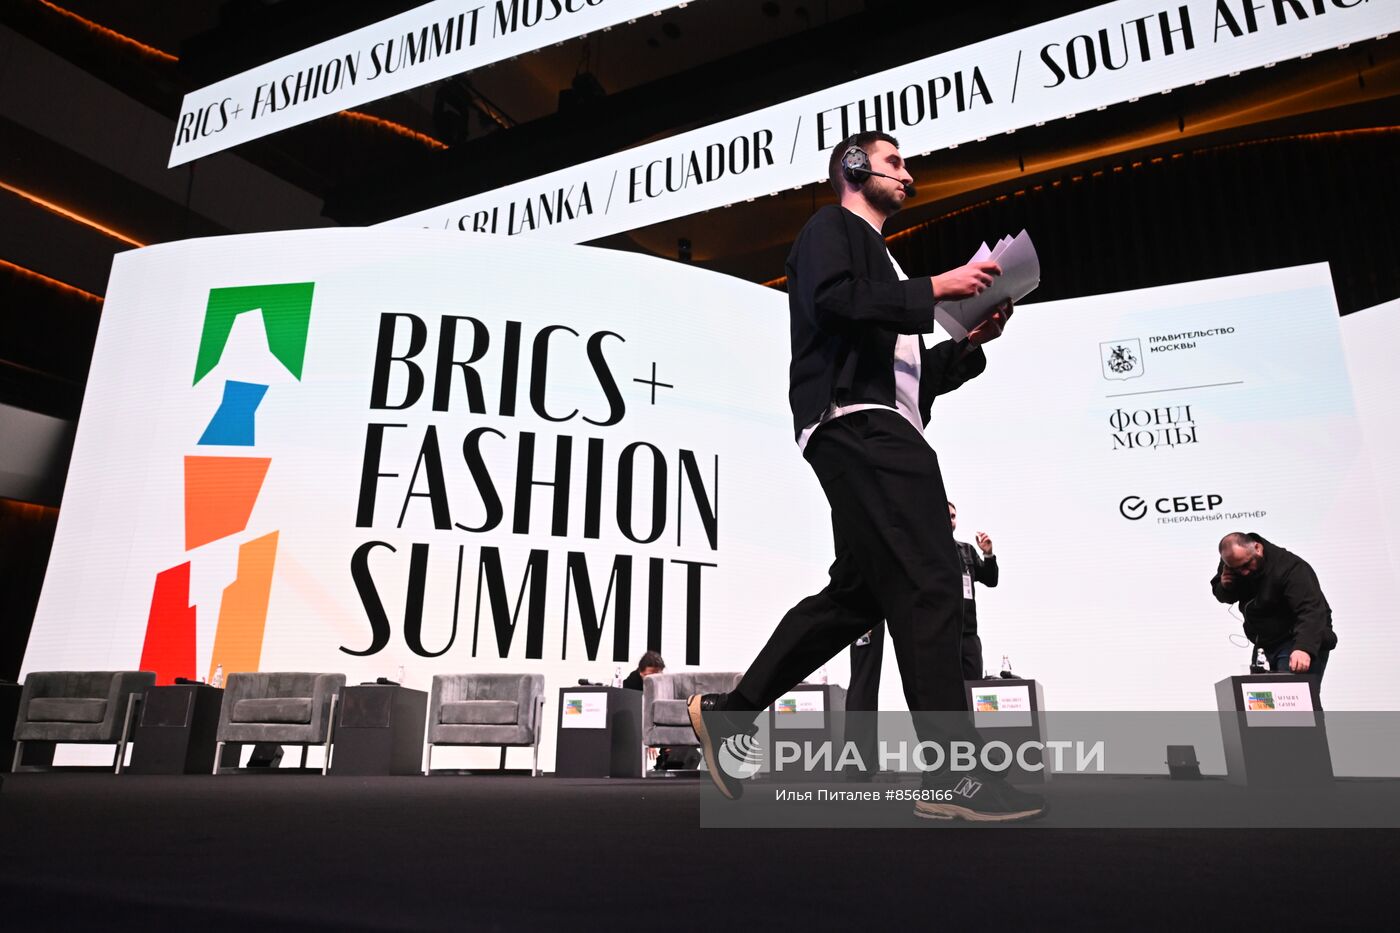 Форум BRICS+ Fashion Summit. Пленарная сессия 